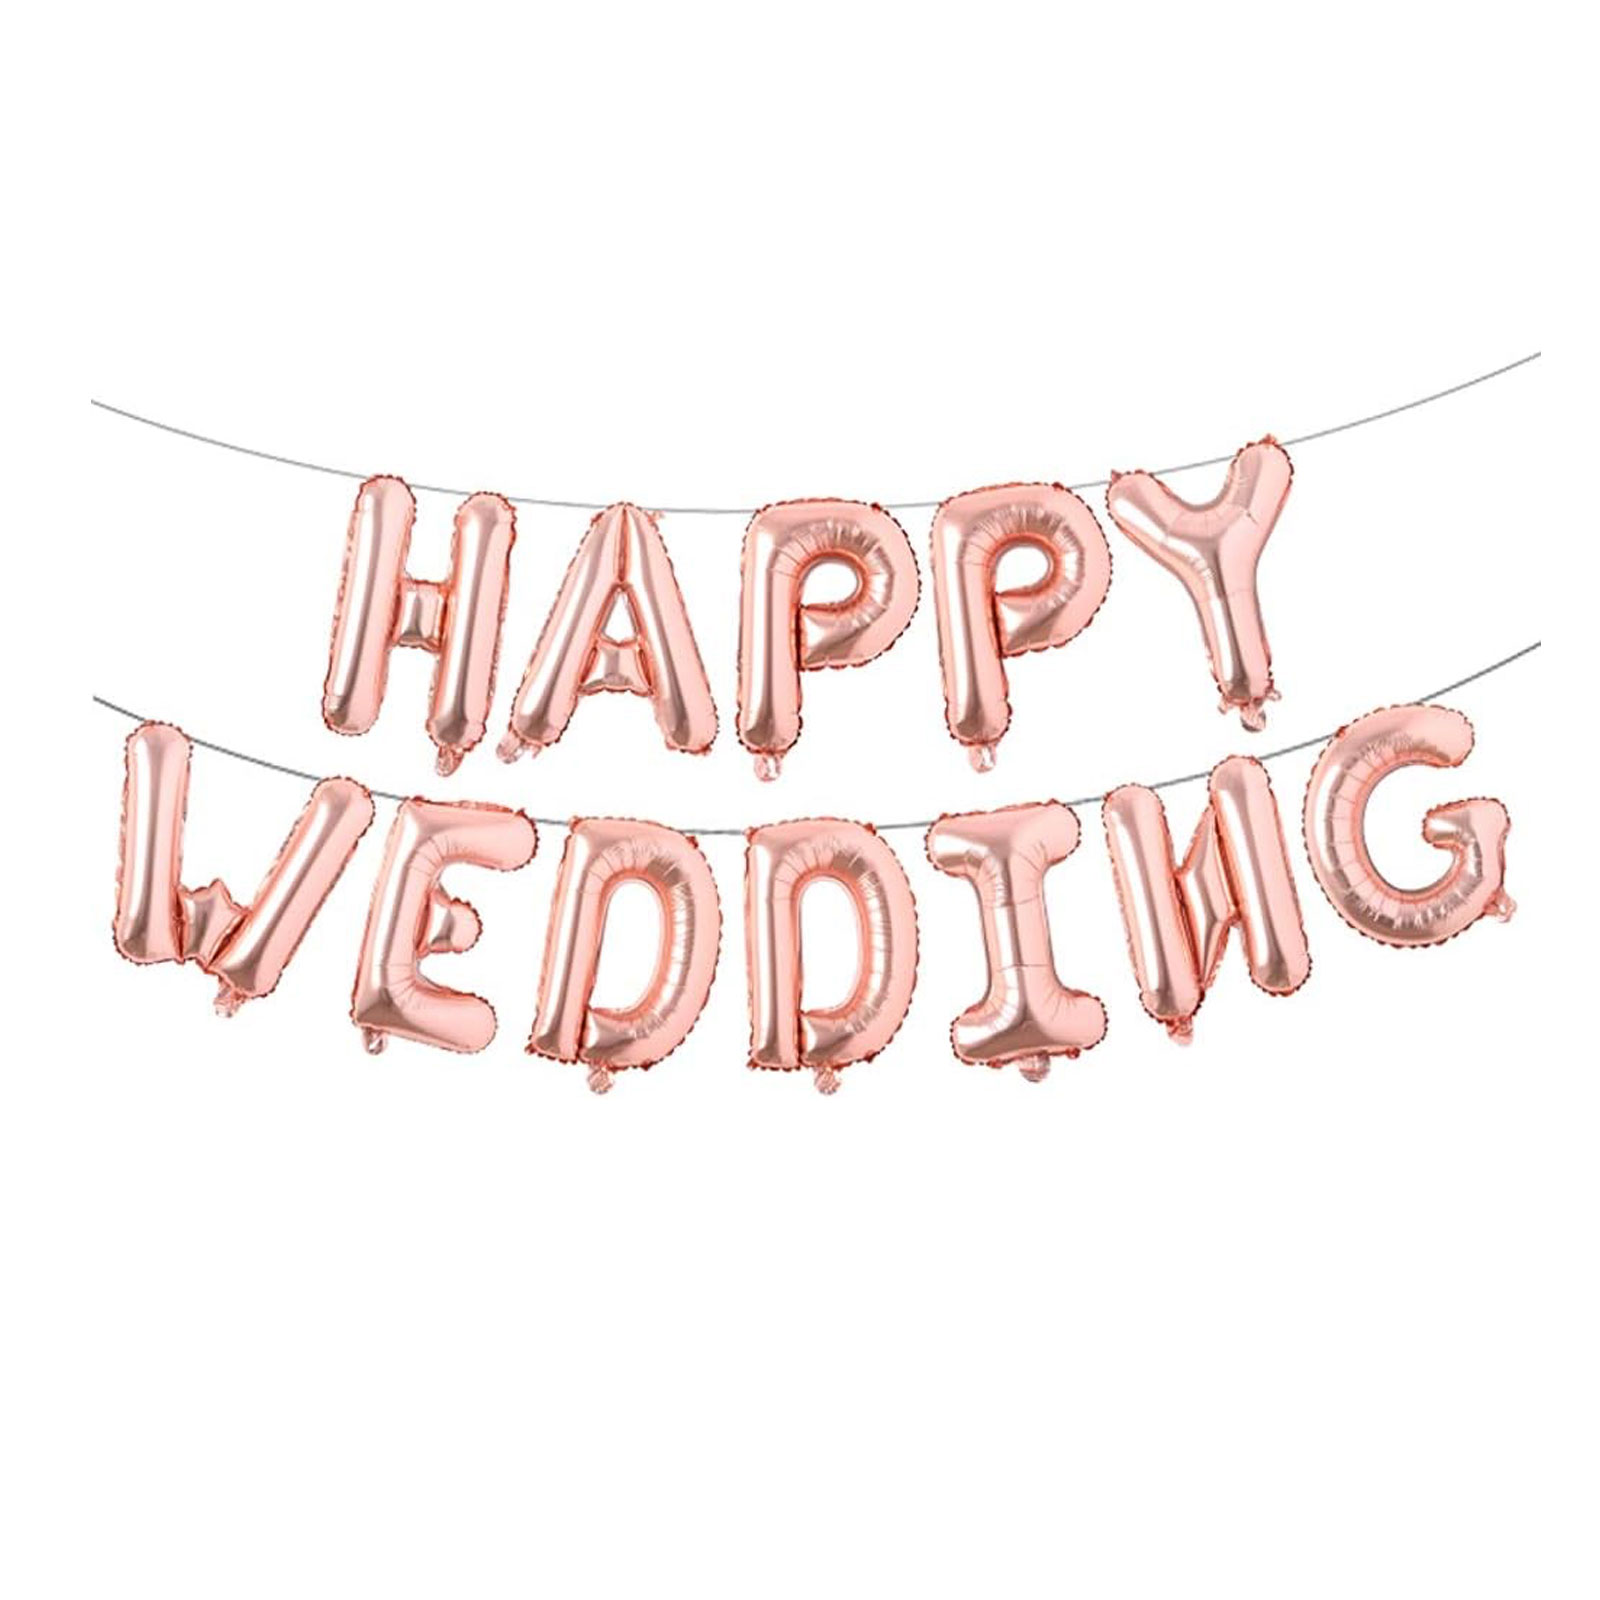 結婚式 バルーン ハッピーウェディング 風船 HAPPY WEDDING ウェディング 飾り 結婚式 飾りつけ ゴールド シルバー ローズゴールド ピンク お祝い 贈り物 プレゼント イベント